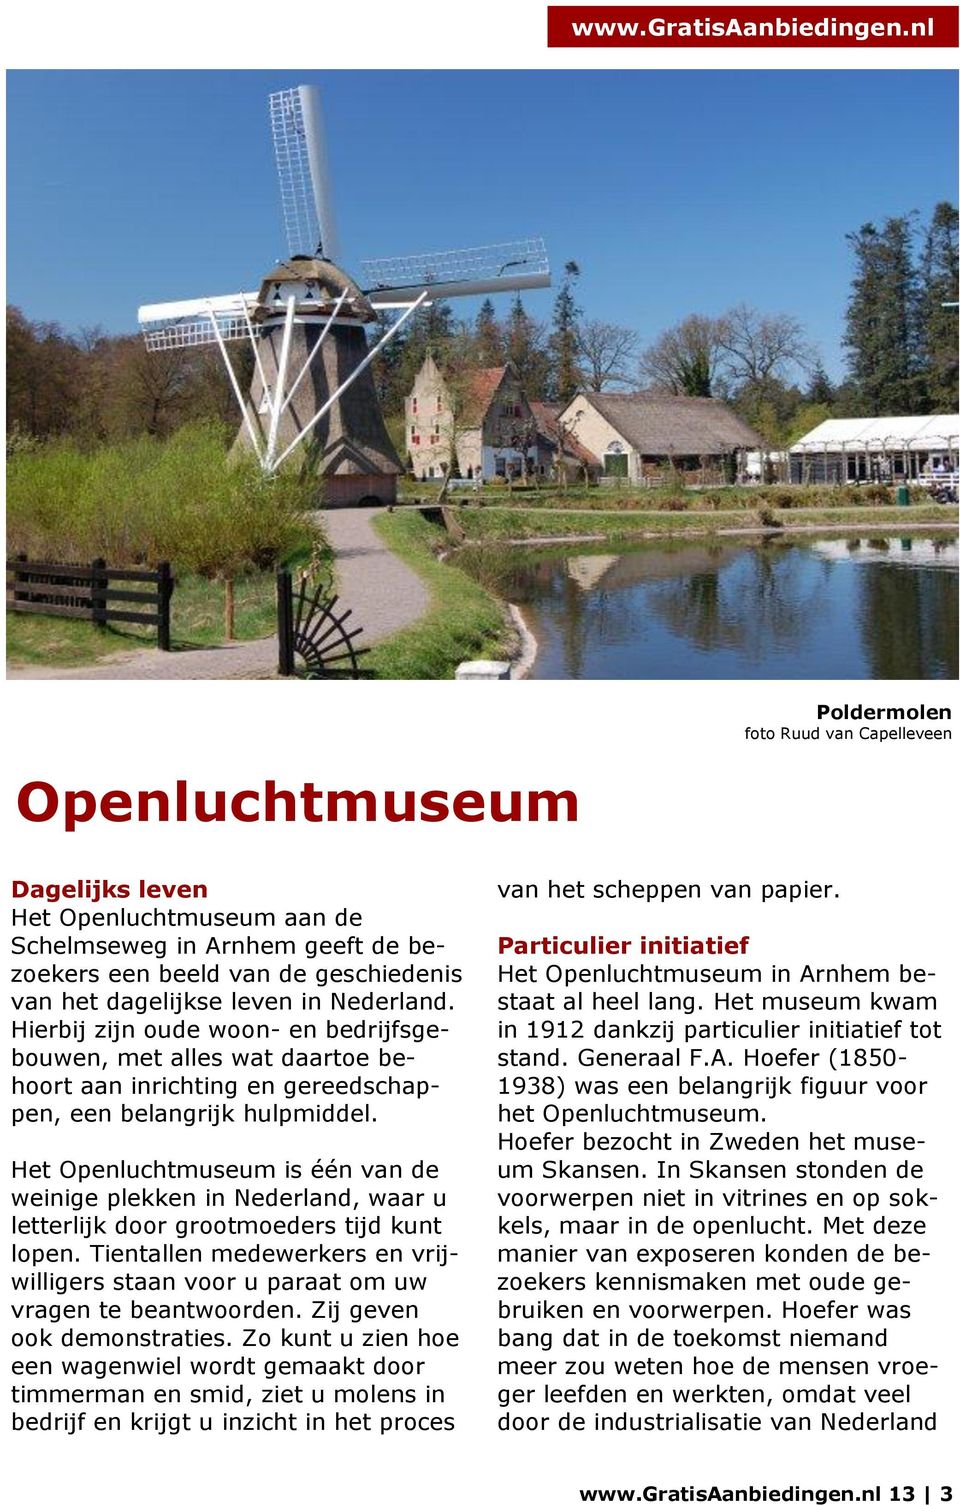 Het Openluchtmuseum is één van de weinige plekken in Nederland, waar u letterlijk door grootmoeders tijd kunt lopen.